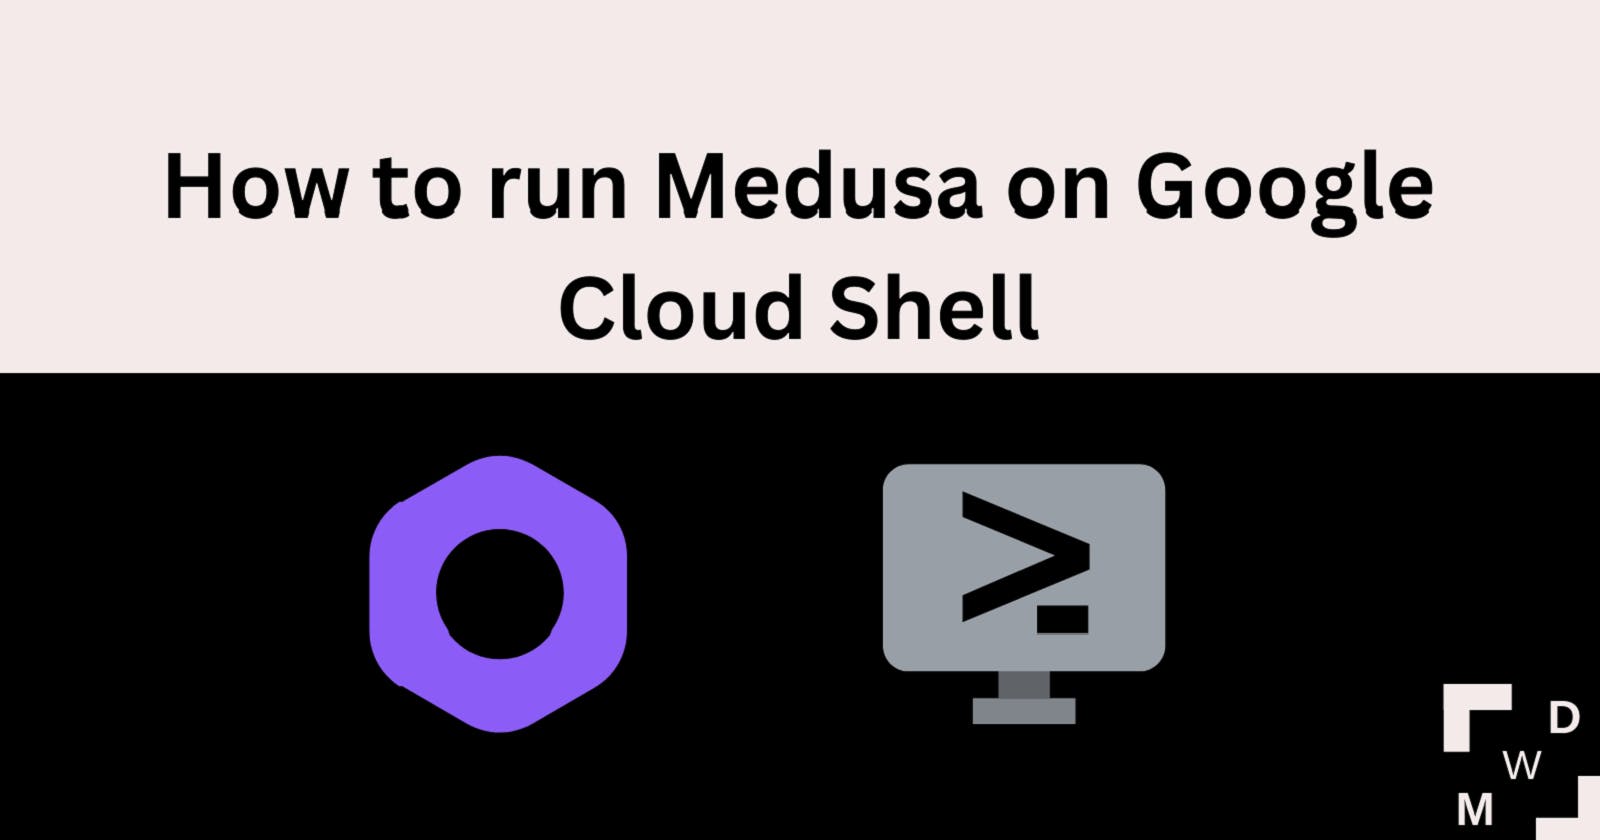 How to run Medusa on Google Cloud Shell